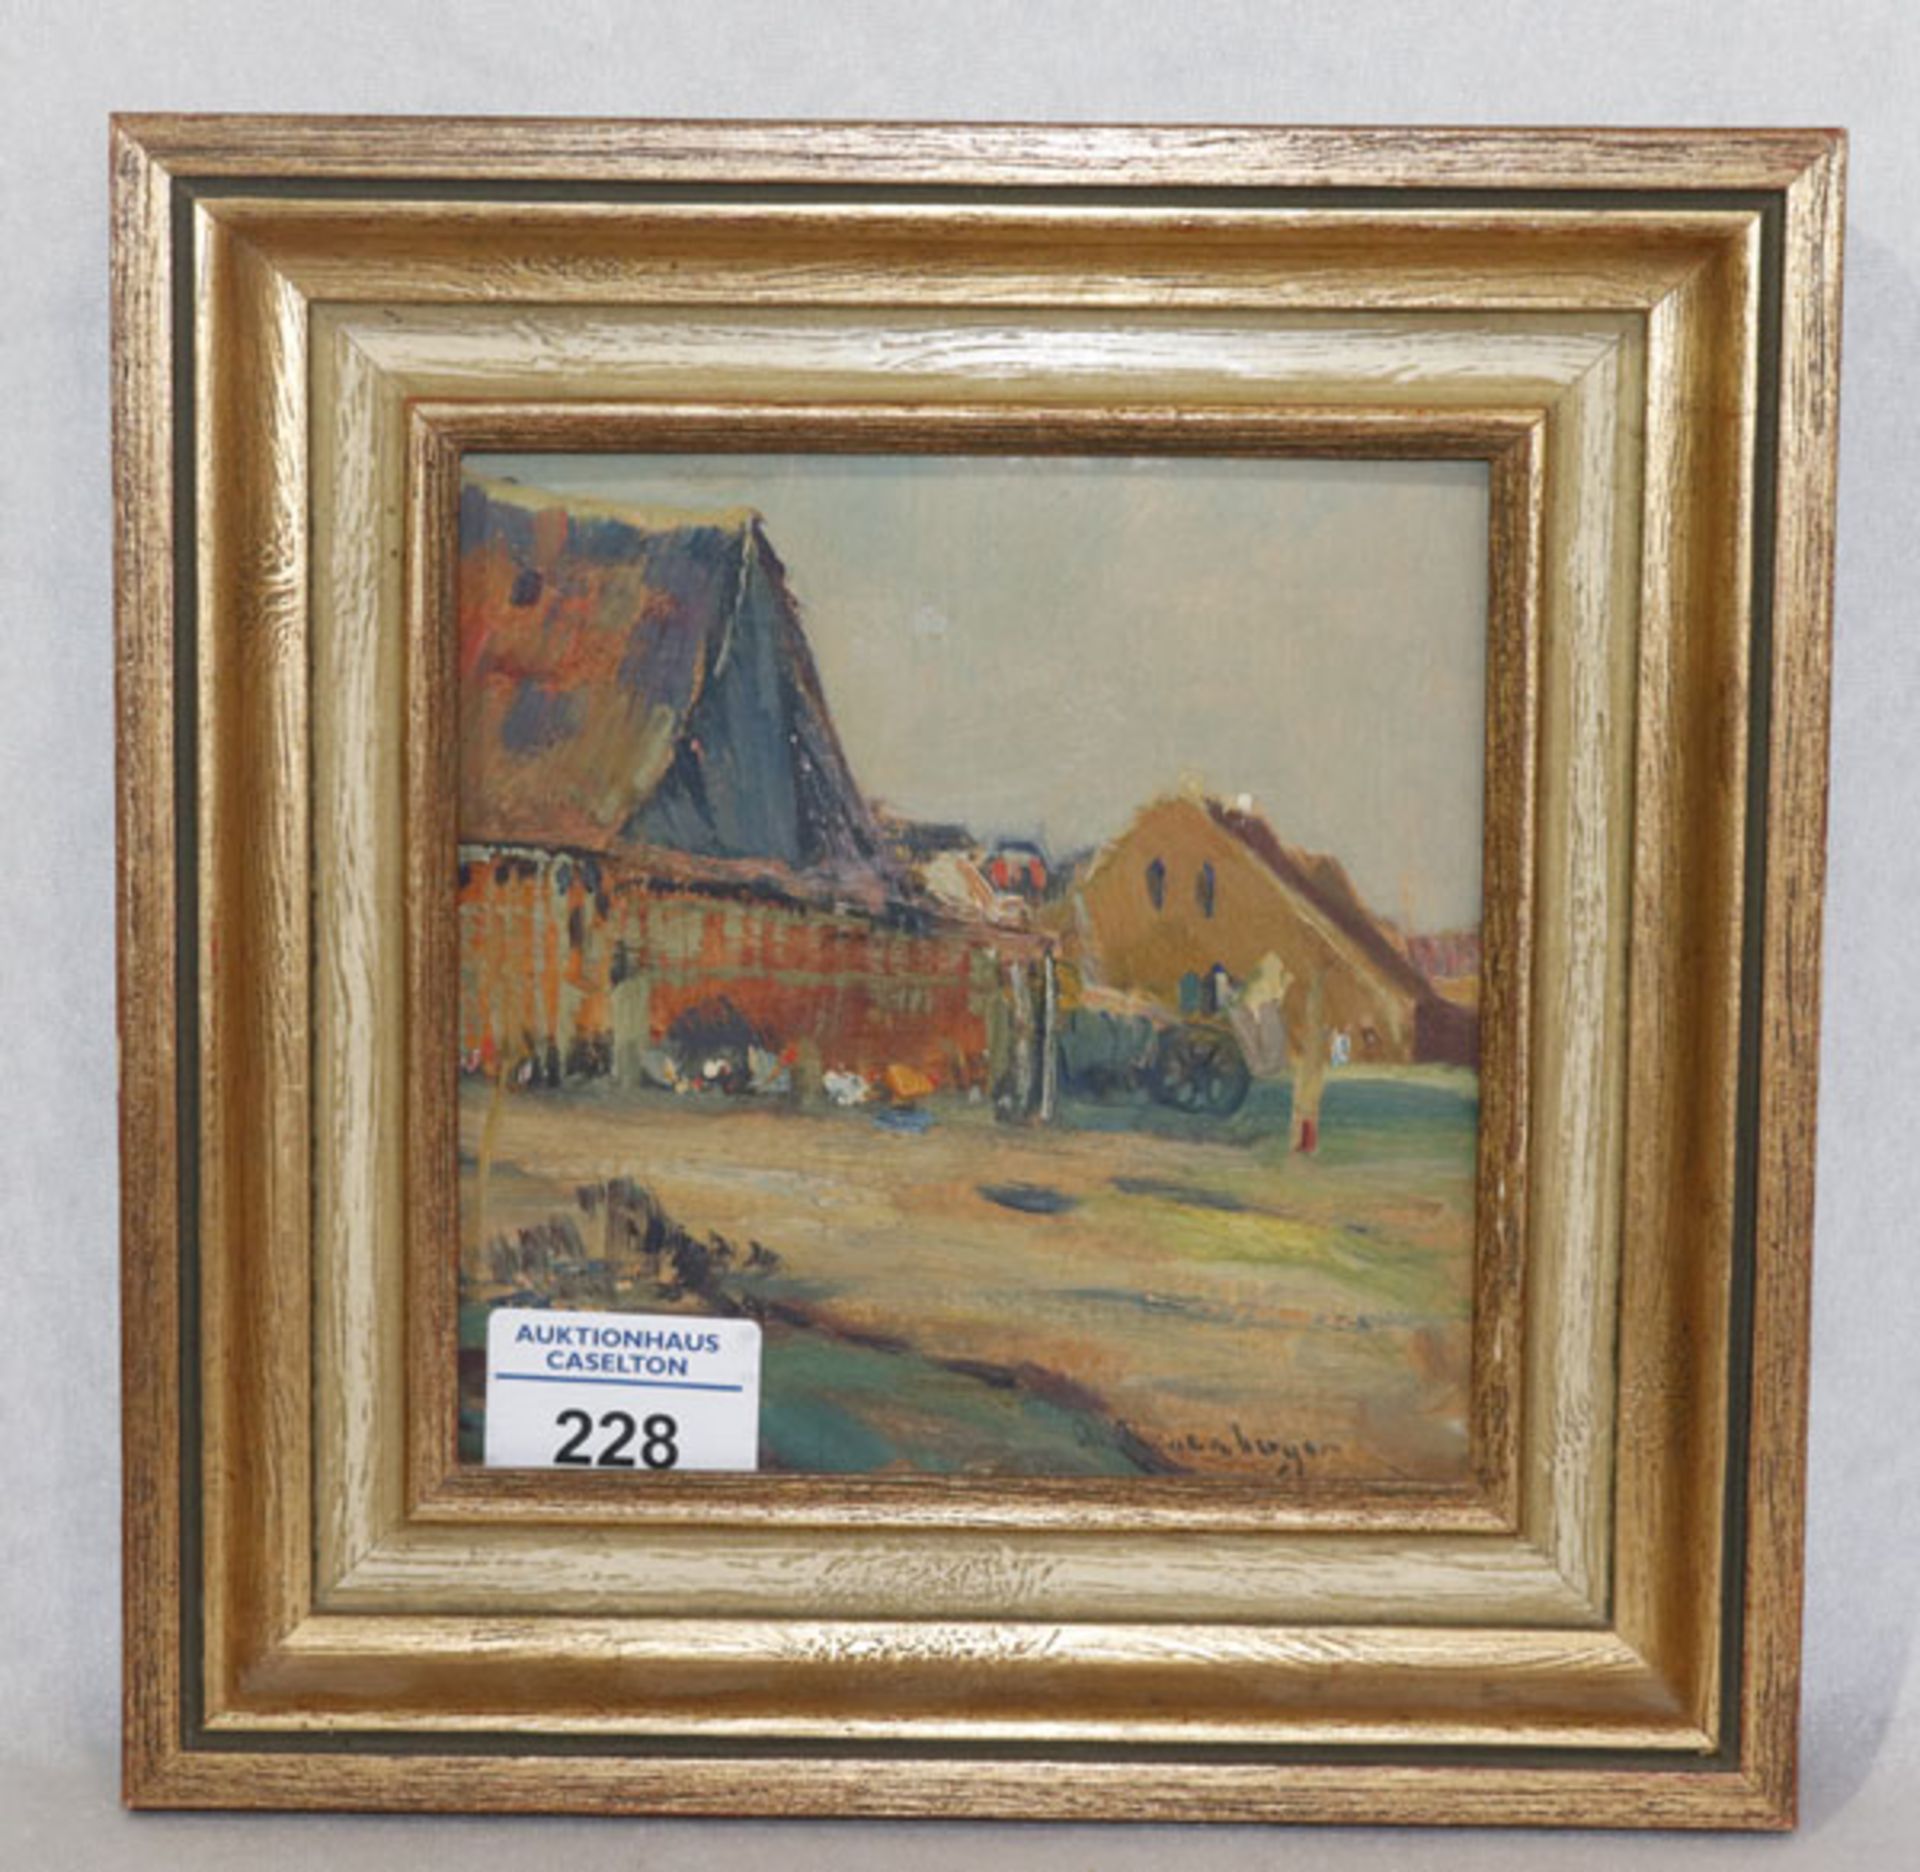 Gemälde ÖL/Malkarton 'Bauernhof-Szenerie', undeutlich signiert, gerahmt, Rahmen bestossen, incl.